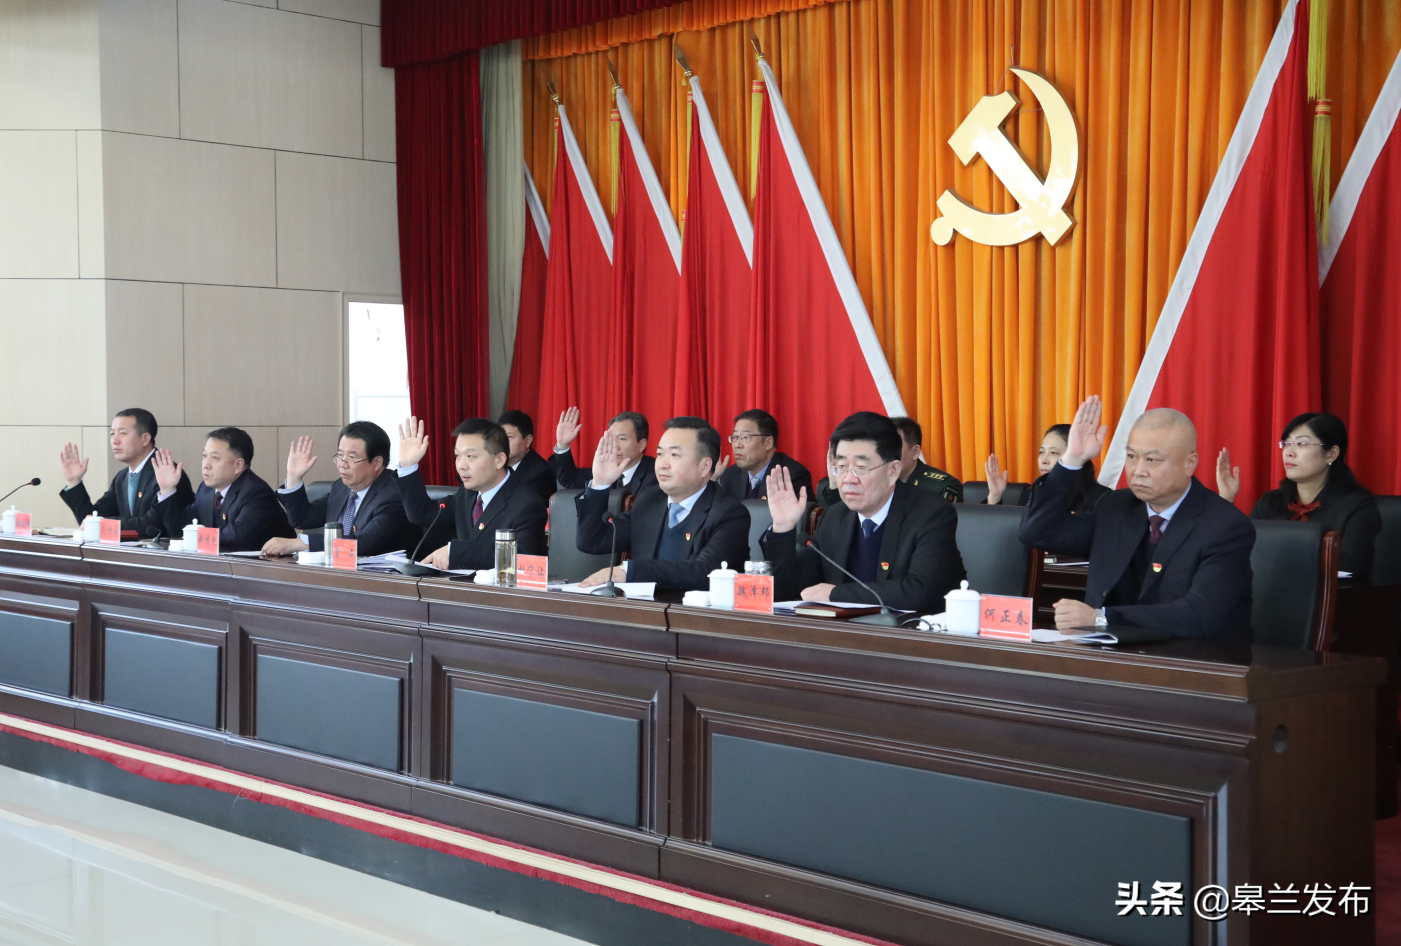 中国共产党皋兰县第十四届委员会第十一次全体会议召开